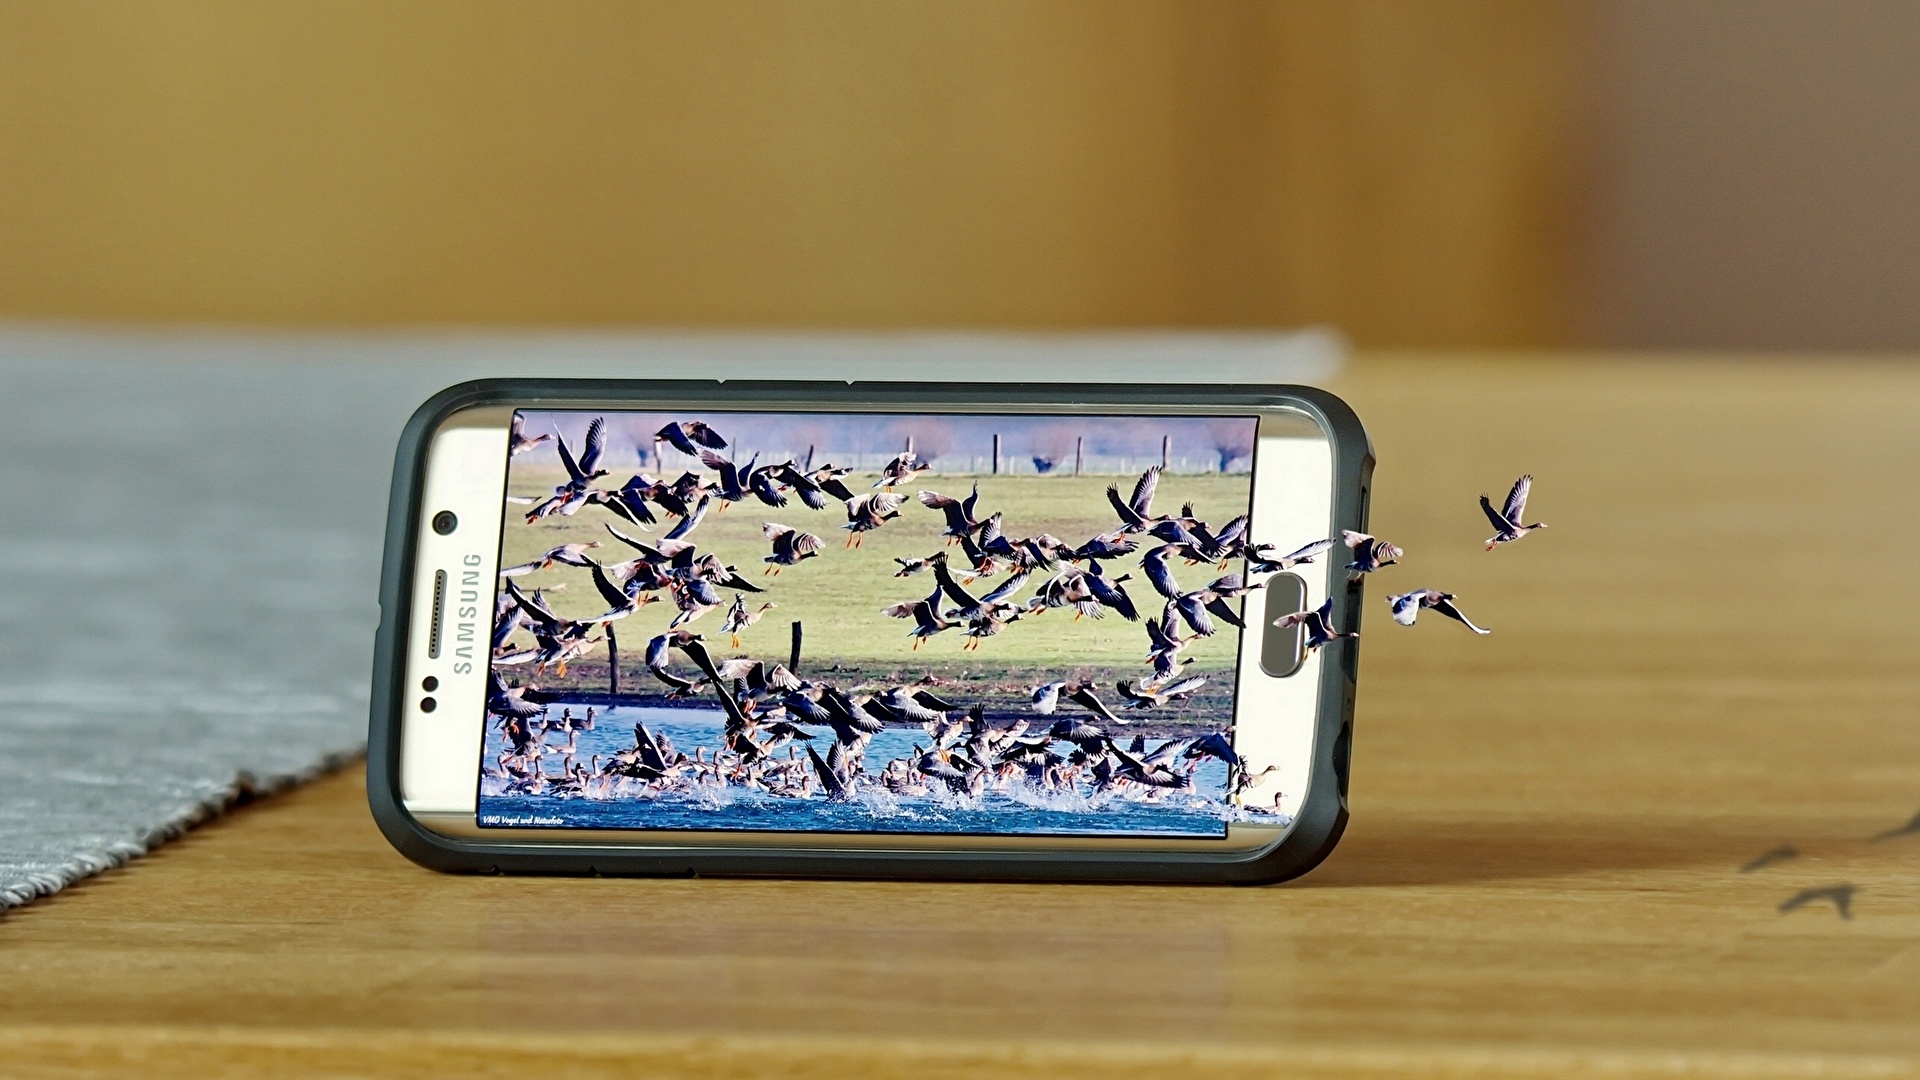 壁紙 19x1080 鳥類 ガチョウ クローズアップ クリエイティブ Samsung Galaxy S6 Edge 電話機 スマートフォン 飛翔 動物 ダウンロード 写真